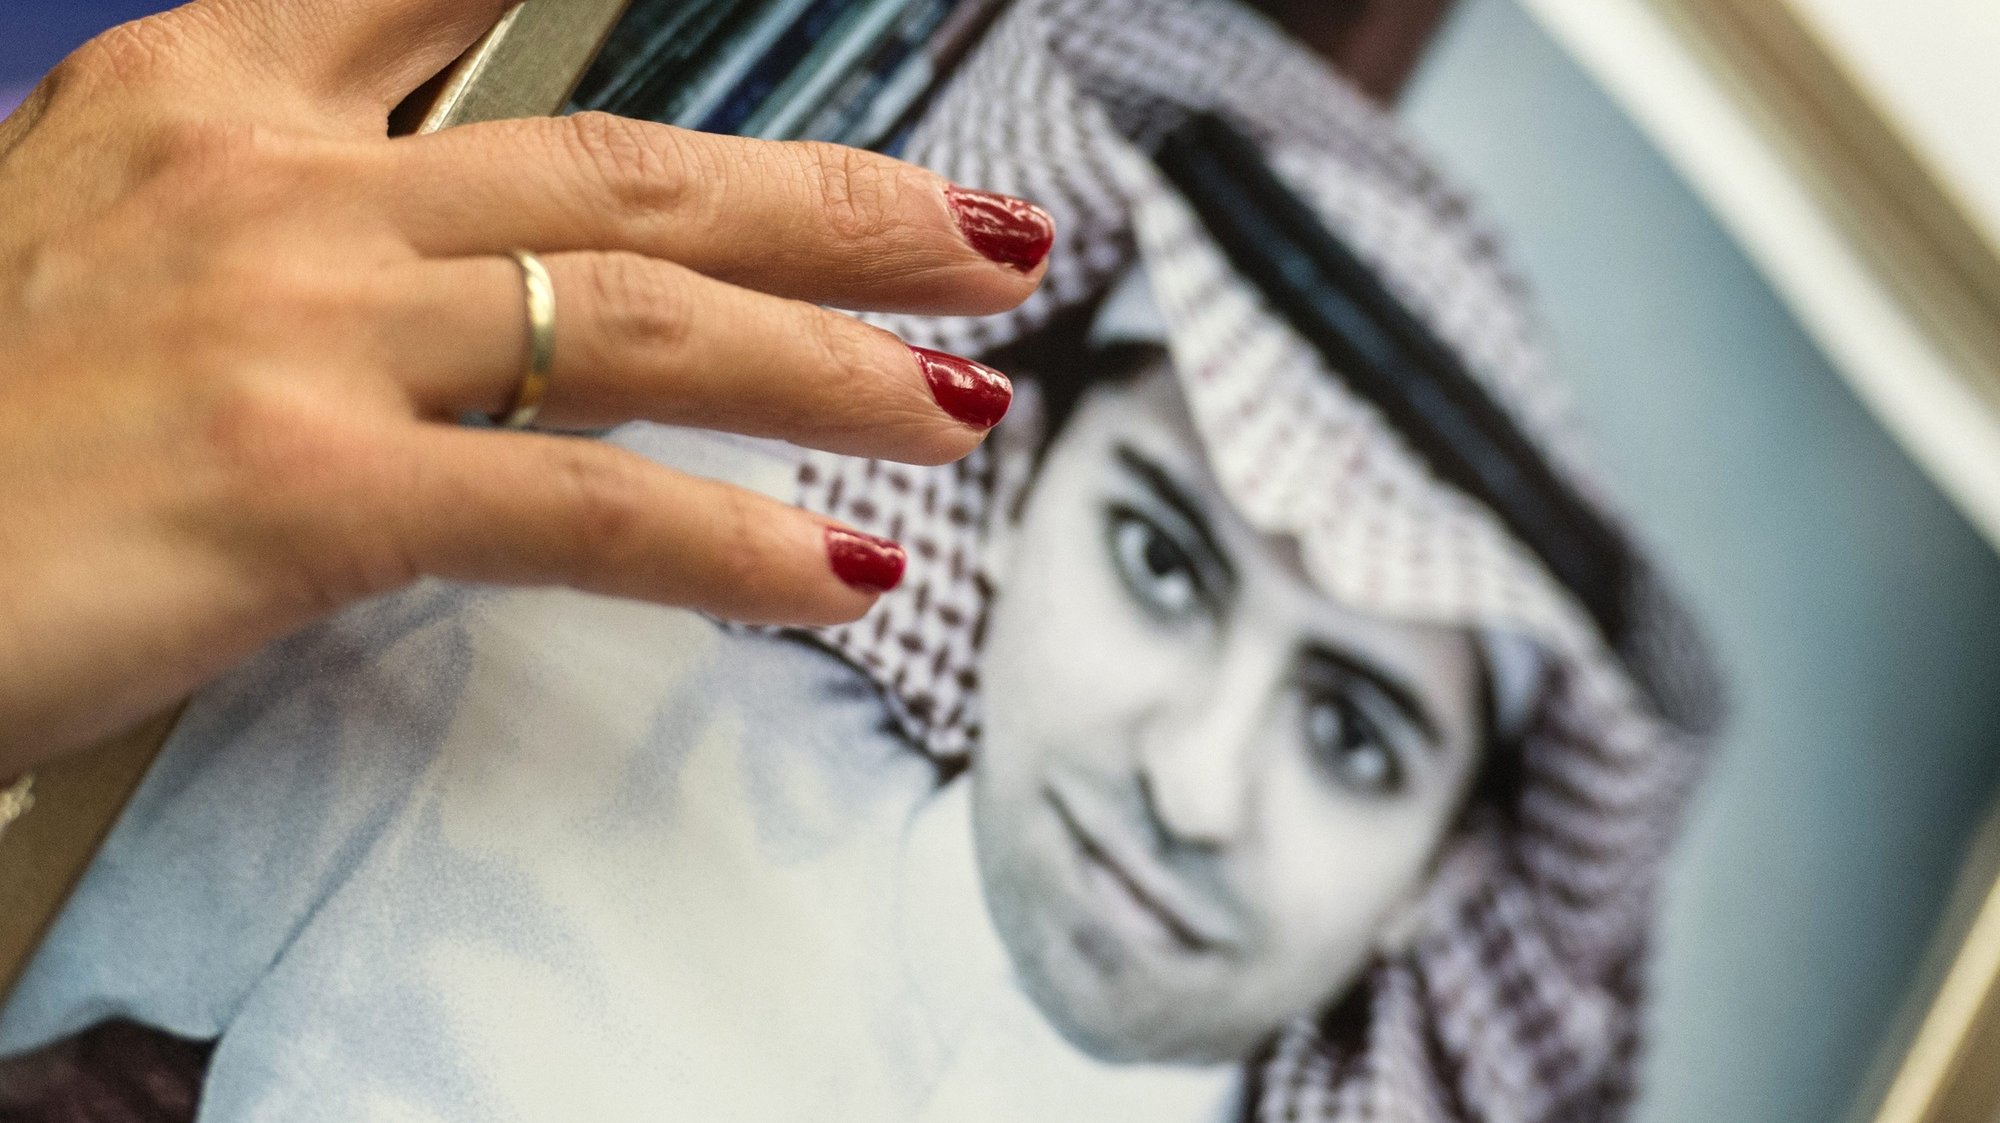 Ensaf Haidar, mulher do ativista Raif Badawi, segura uma fotografia do marido durante uma conferência de imprensa do Parlamento Europeu em Estrasburgo. 16 de dezembro de 2015